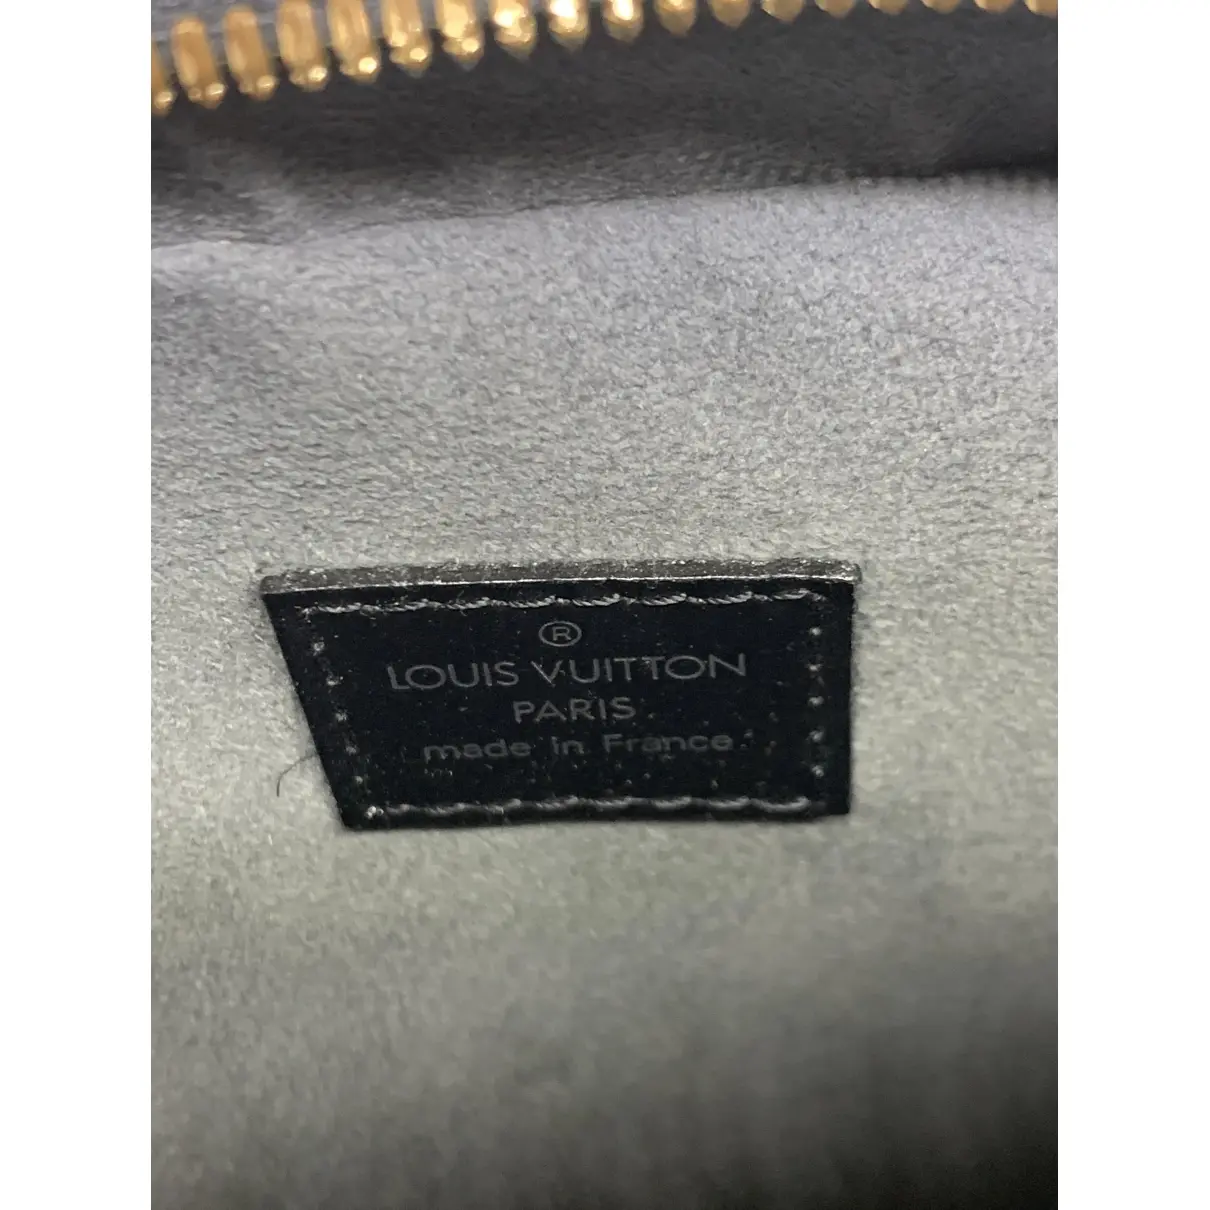 Buy Louis Vuitton Sablon leather handbag online - Vintage